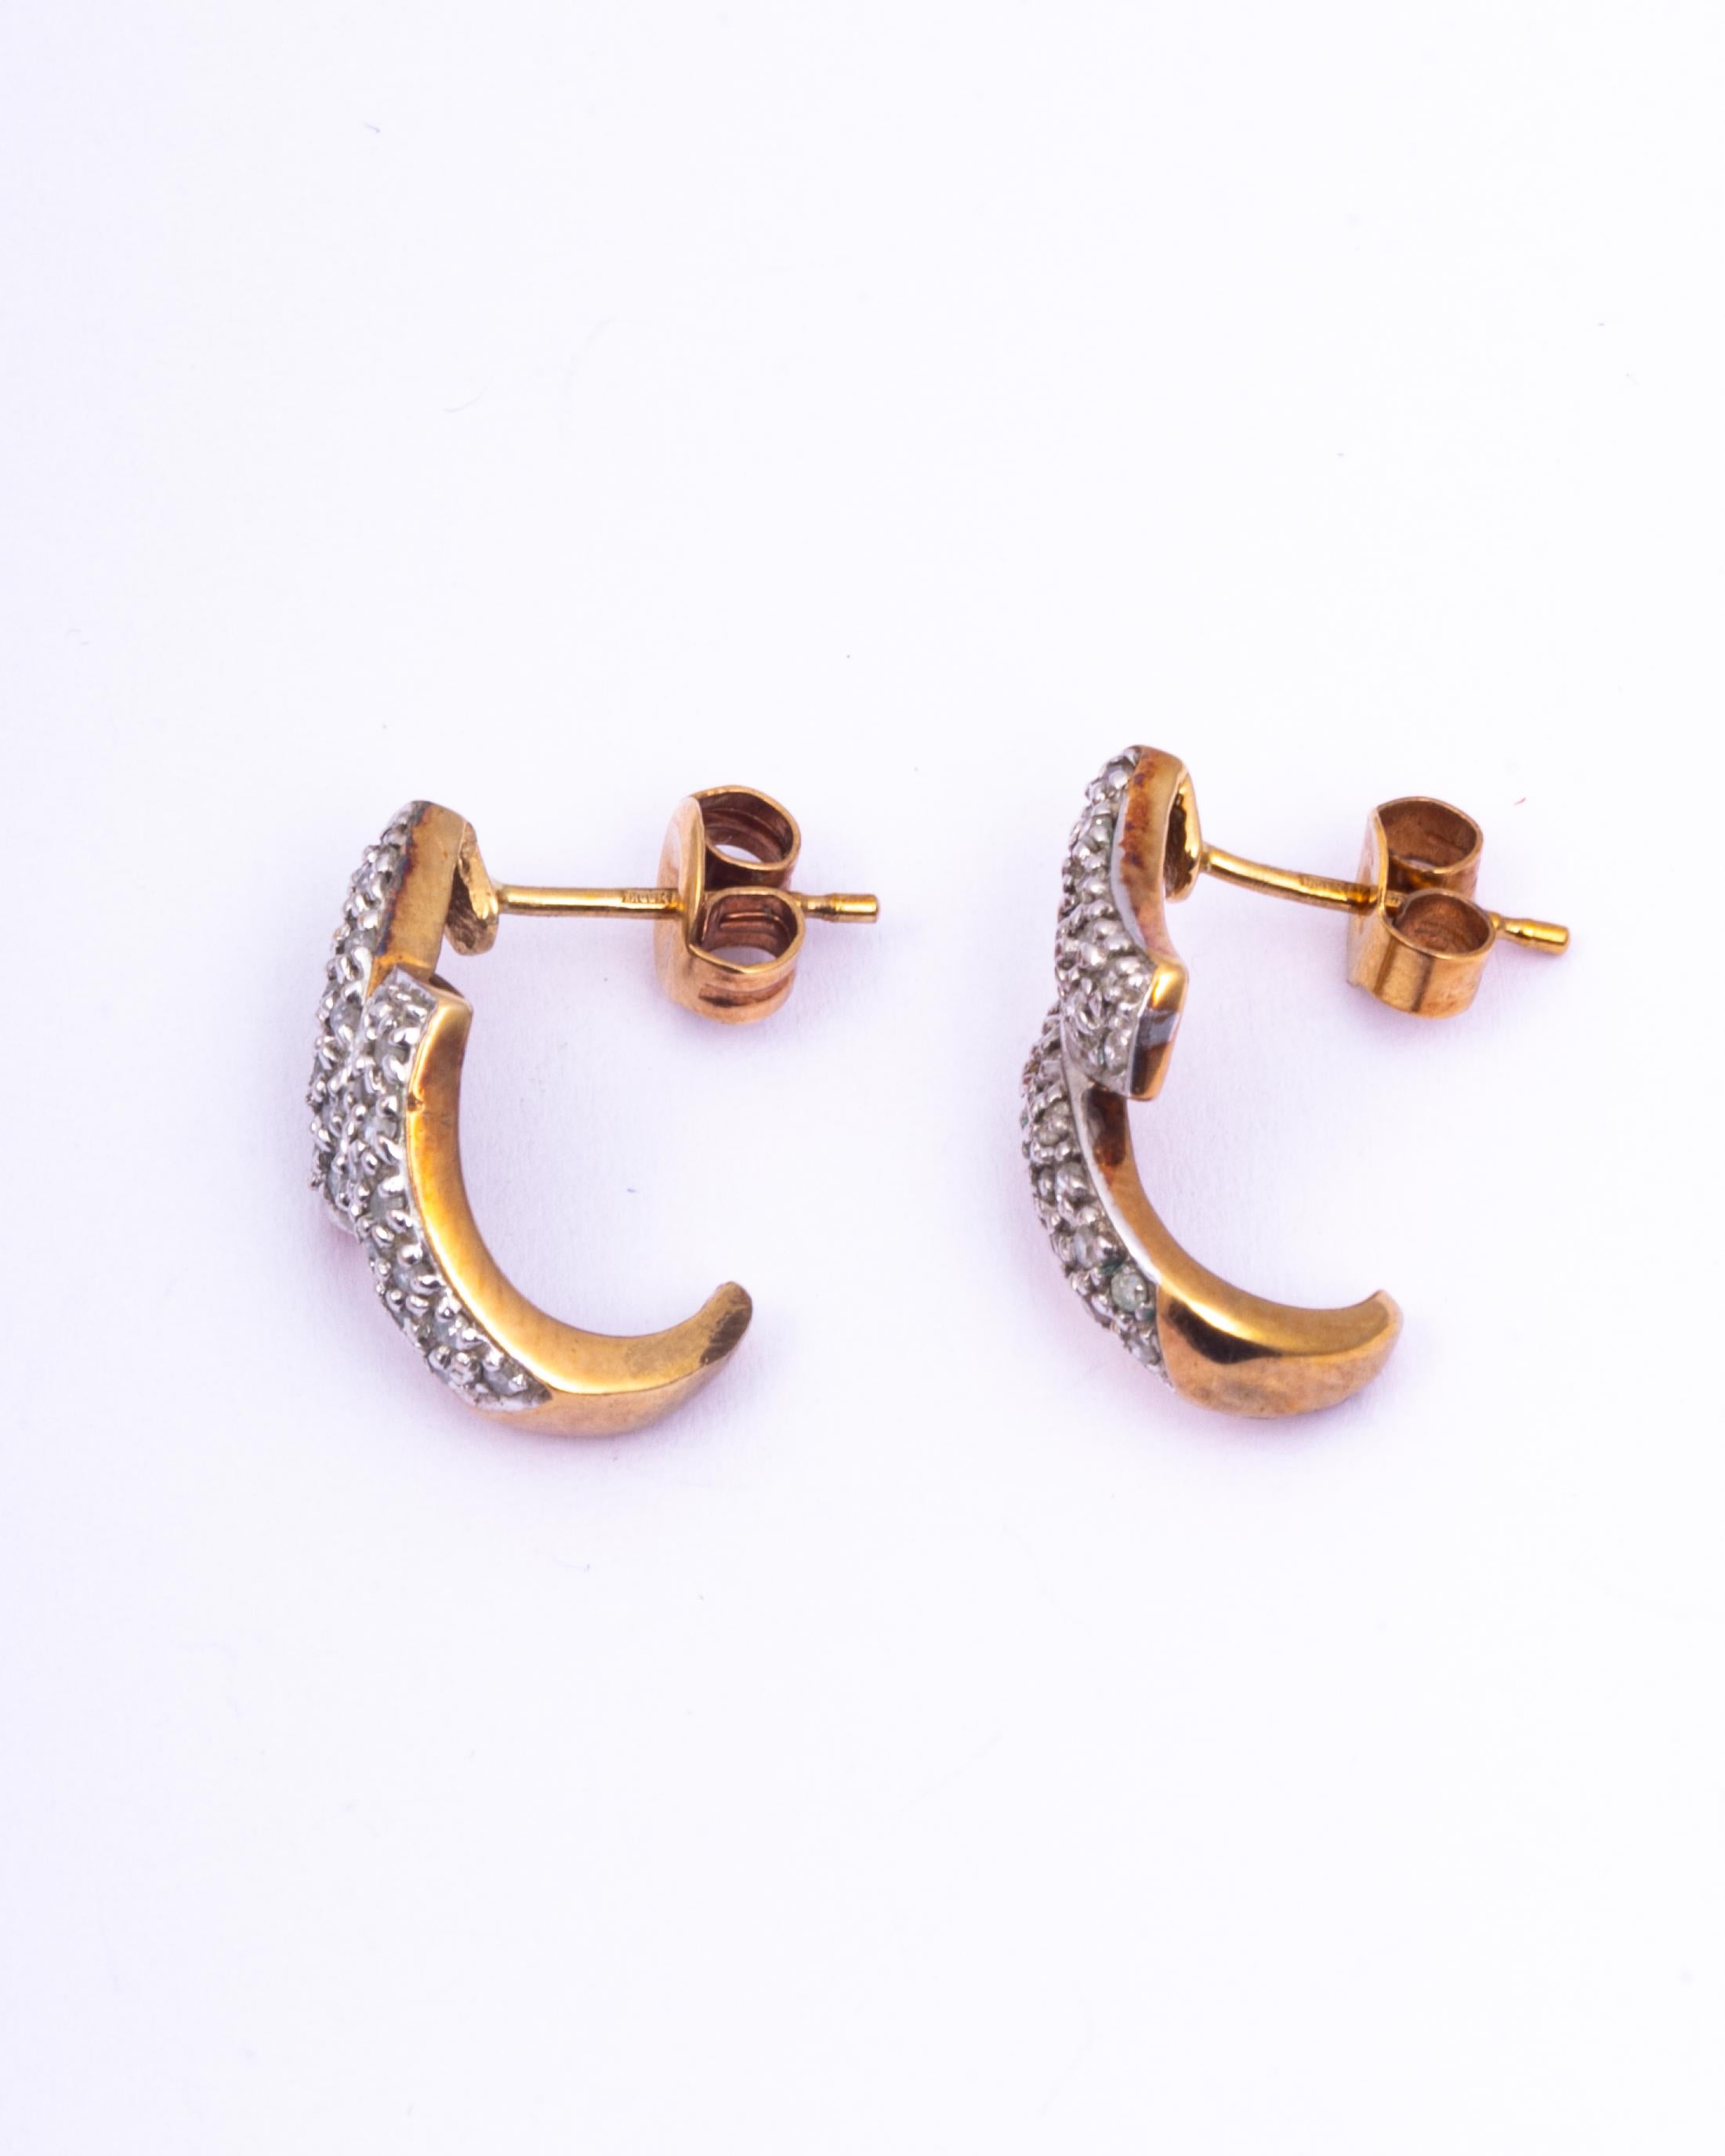 Diese wunderschönen Ohrringe sind mit Diamanten in Platin besetzt. Die Diamanten sind zwar klein, aber sie funkeln wunderschön, und das Platin passt perfekt zu ihnen. Der Rest des Ohrrings ist in 9-karätigem Gold modelliert. 

Tropfen vom Ohr: 16mm